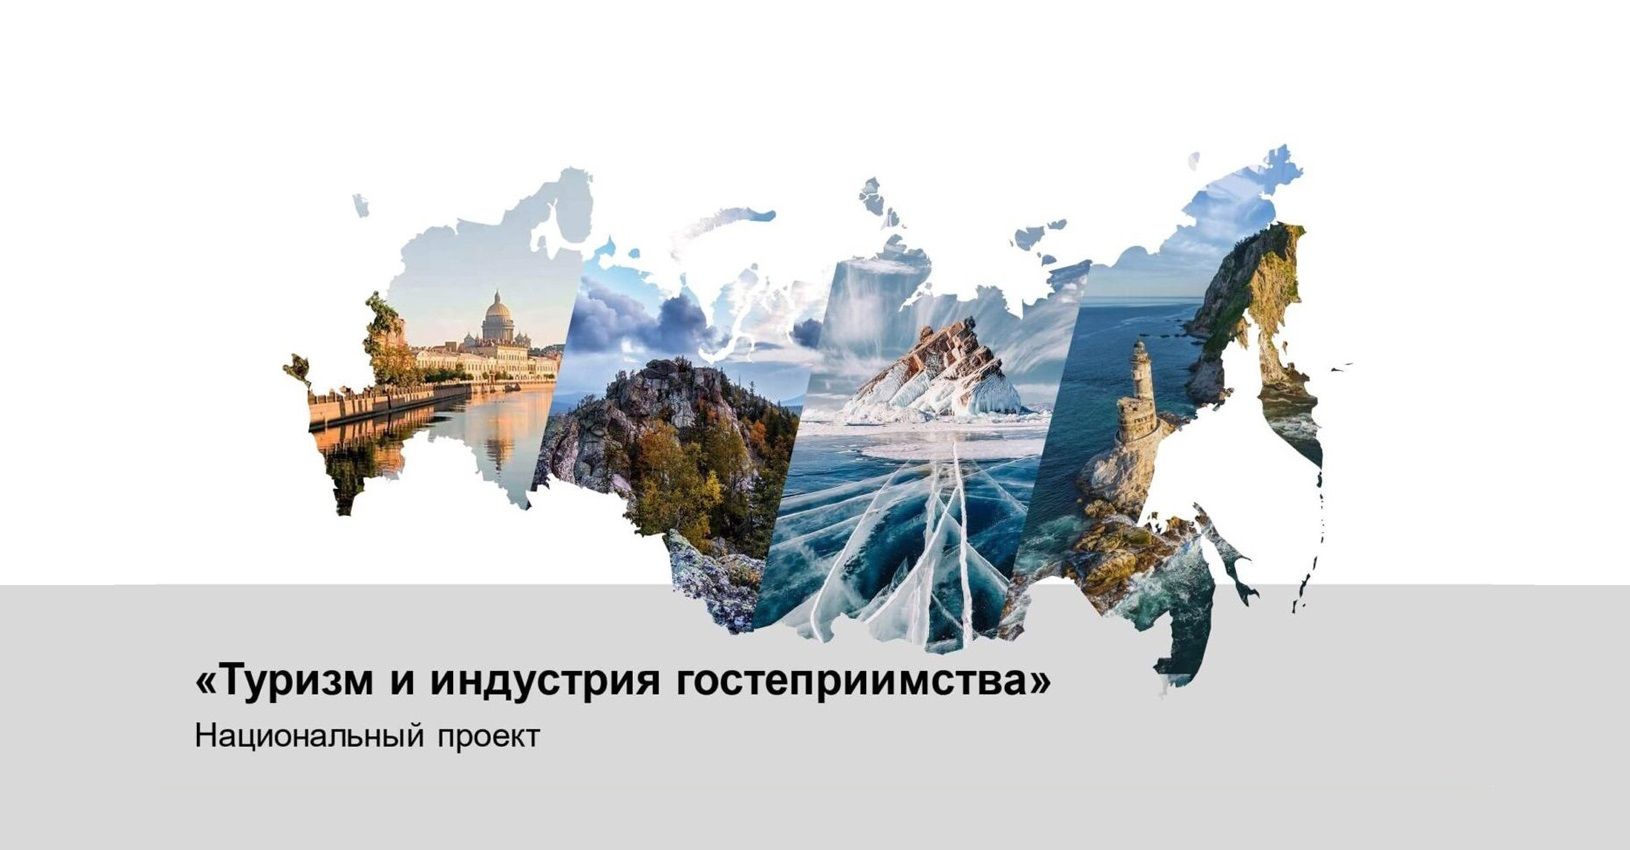 Отрасли туризма в россии